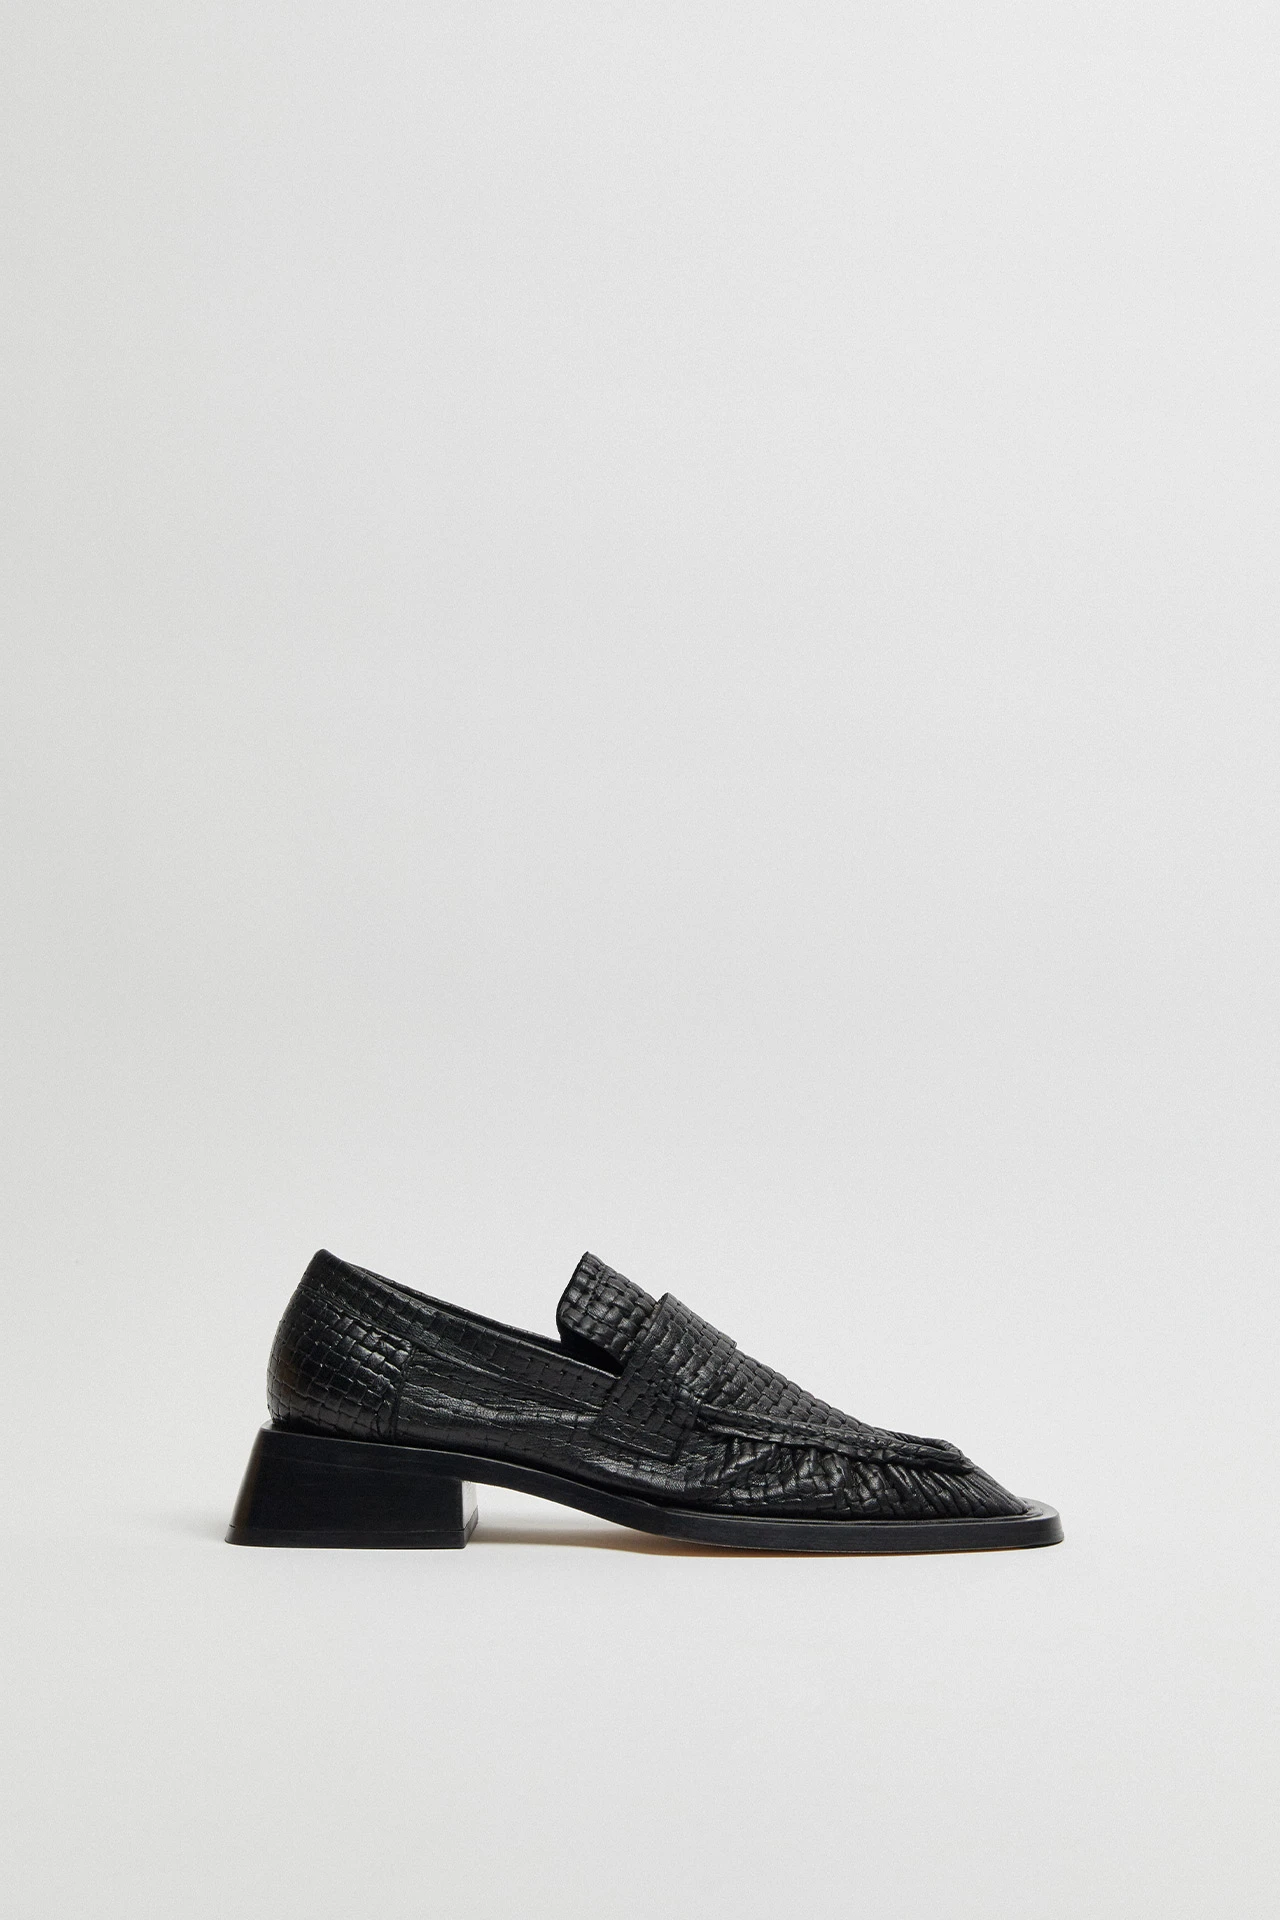 Miista-Airi-Black-Leather-Loafers-01